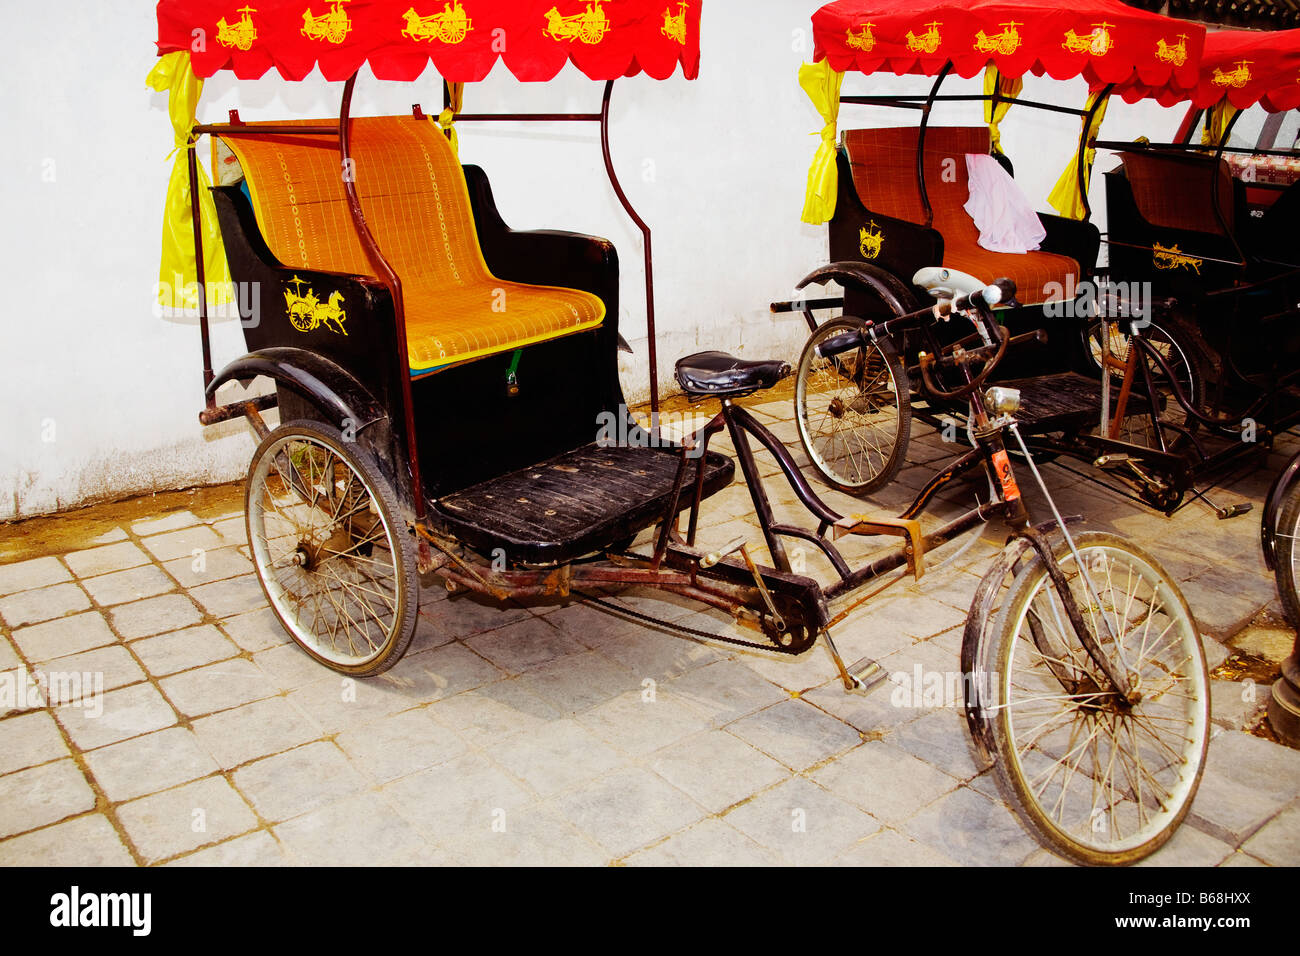 Des vélotaxis devant un mur, Qufu, dans la province de Shandong, Chine Banque D'Images